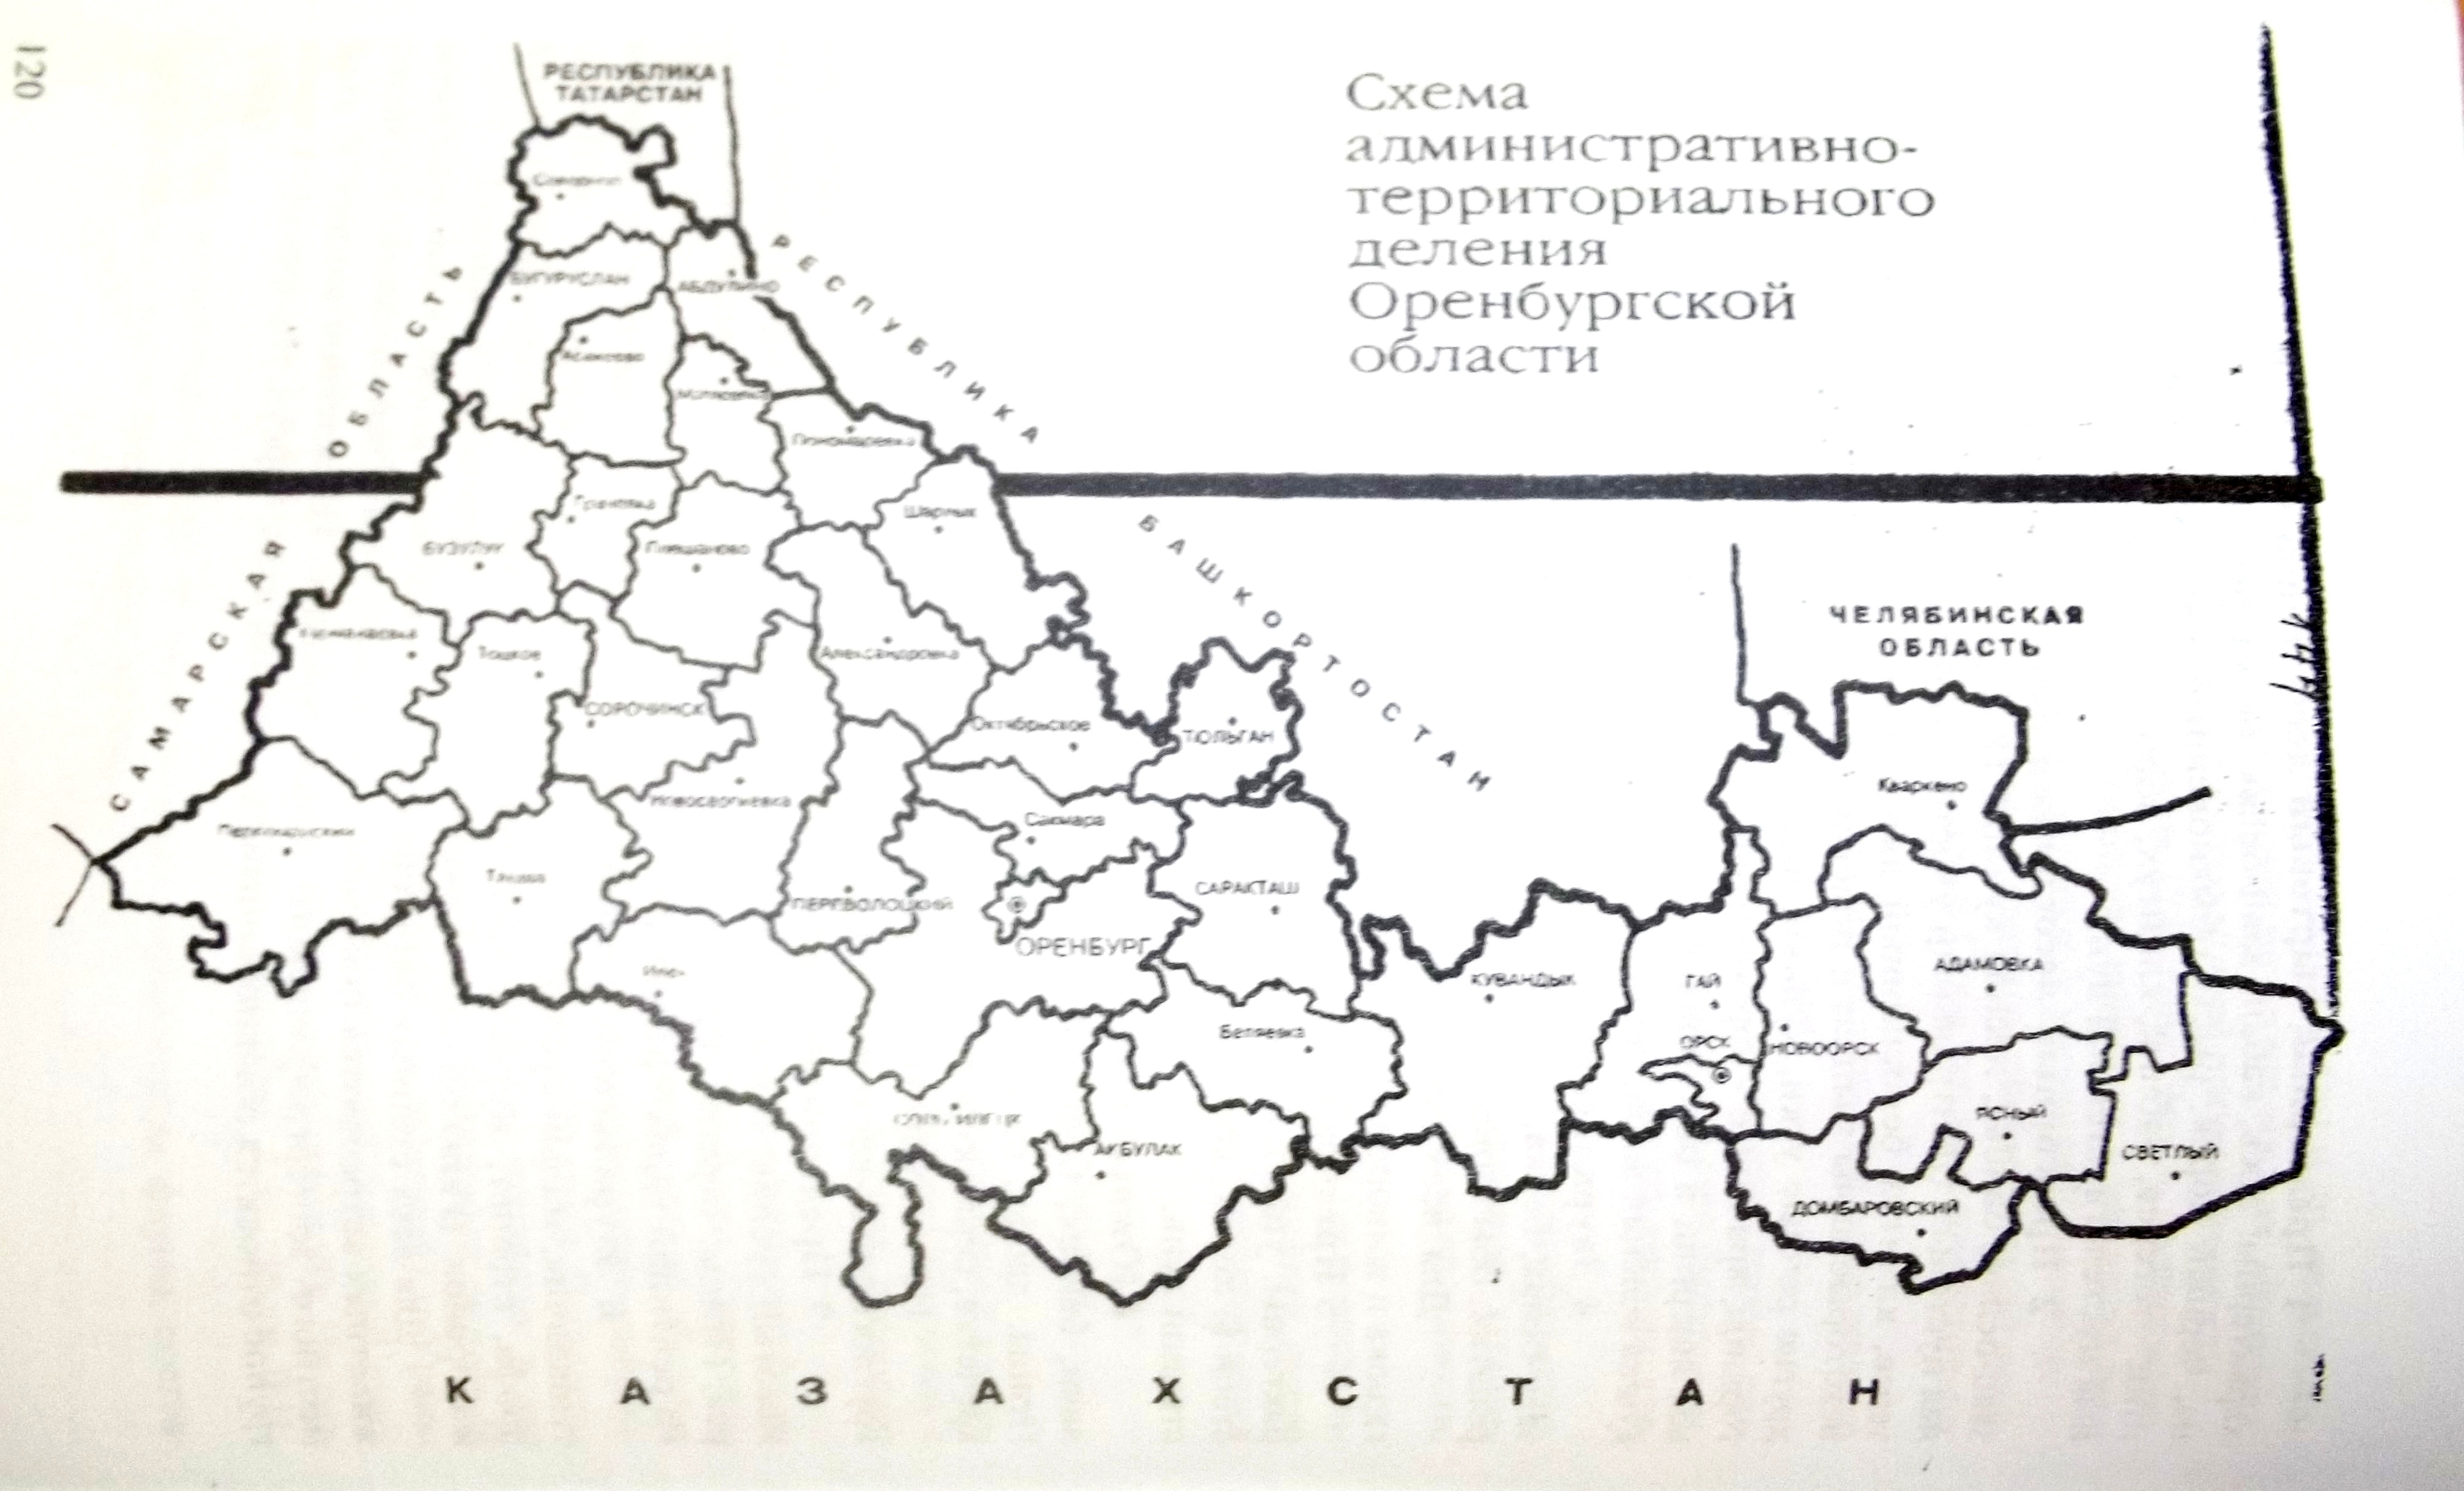 Зоны оренбургской области карта